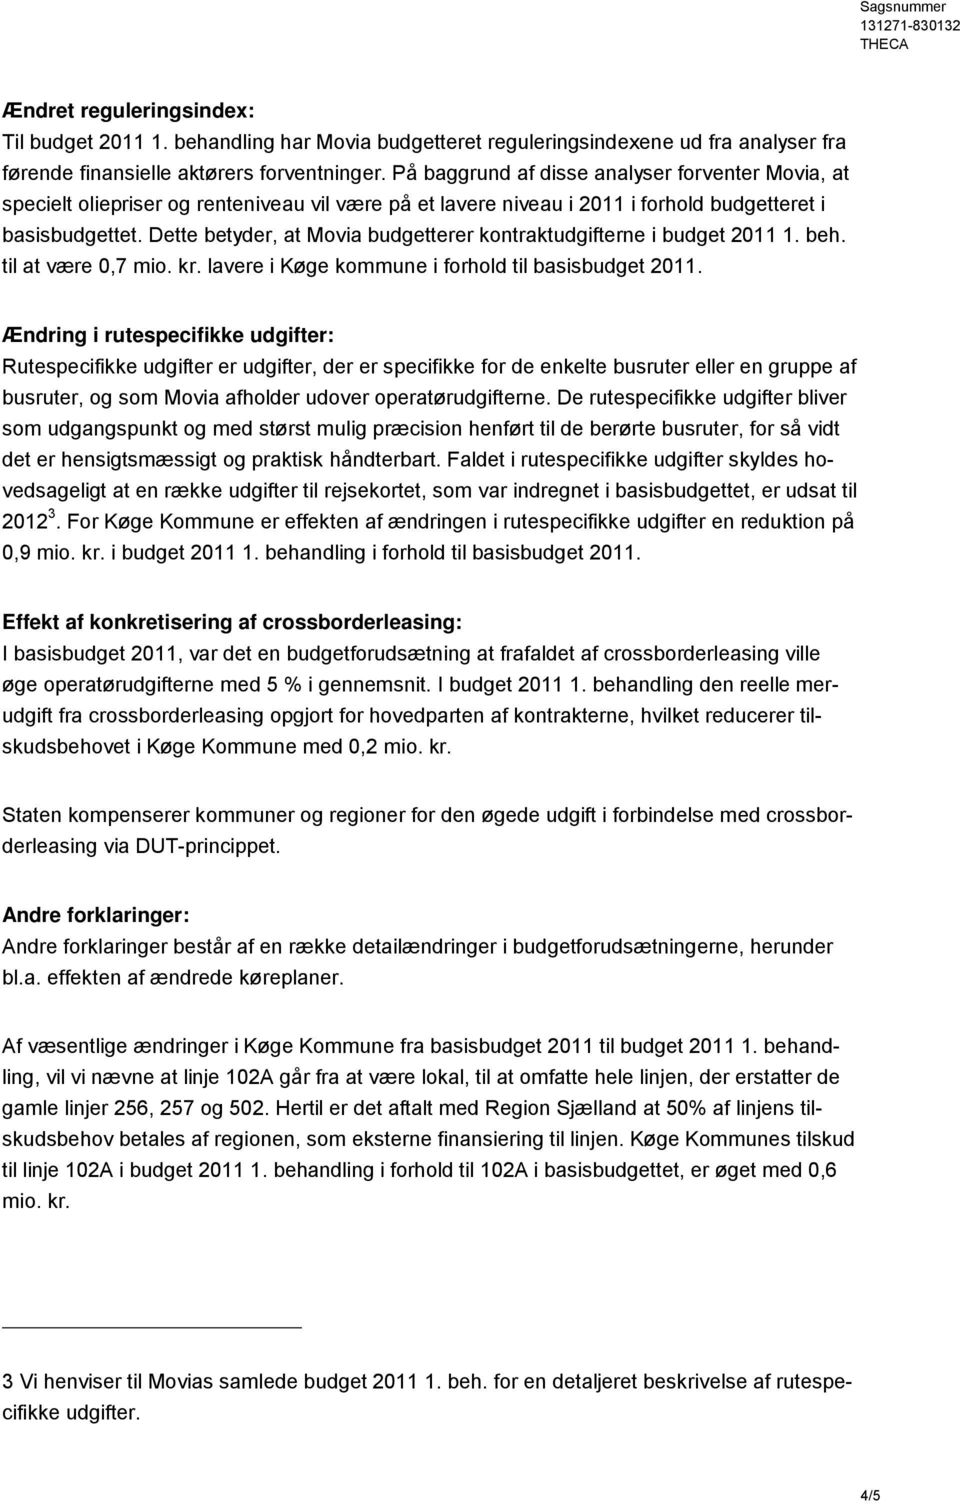 Dette betyder, at Movia budgetterer kontraktudgifterne i budget 2011 1. beh. til at være 0,7 mio. kr. lavere i kommune i forhold til basisbudget 2011.